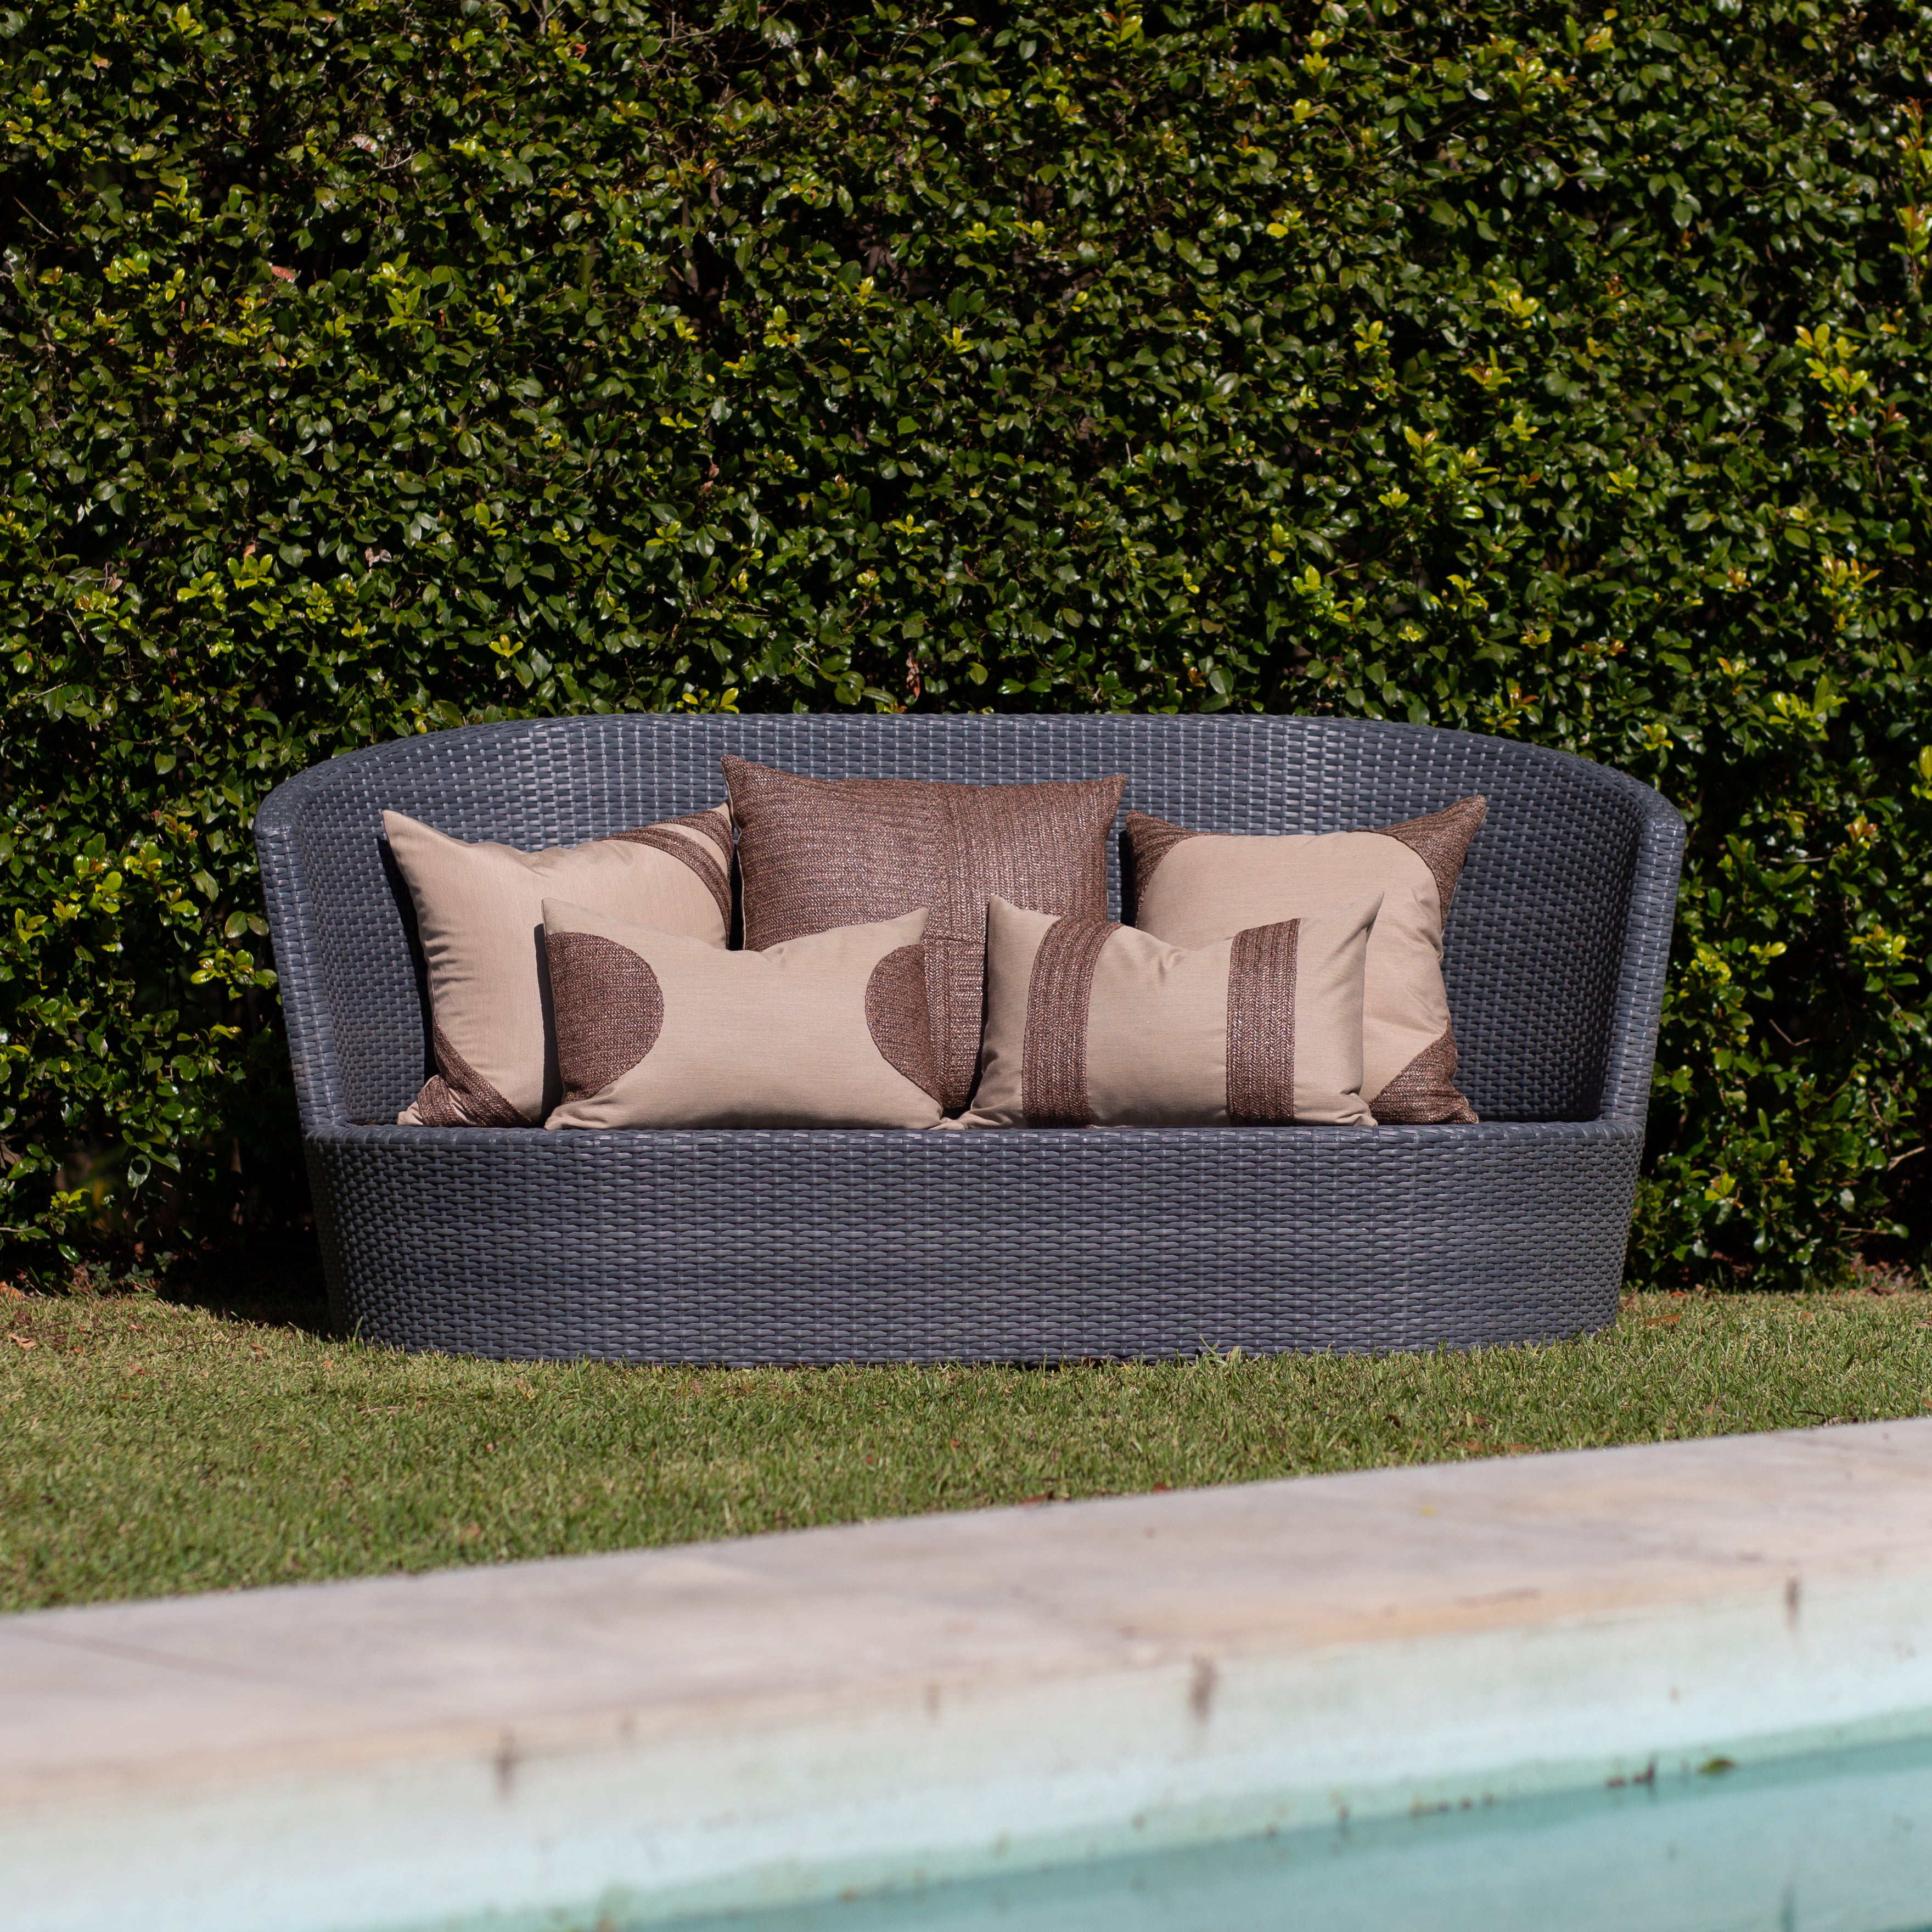 Bandhini - Design House Outdoor Cushion Outdoor Raffia Lines Lumbar Cushion 35 x 53cm